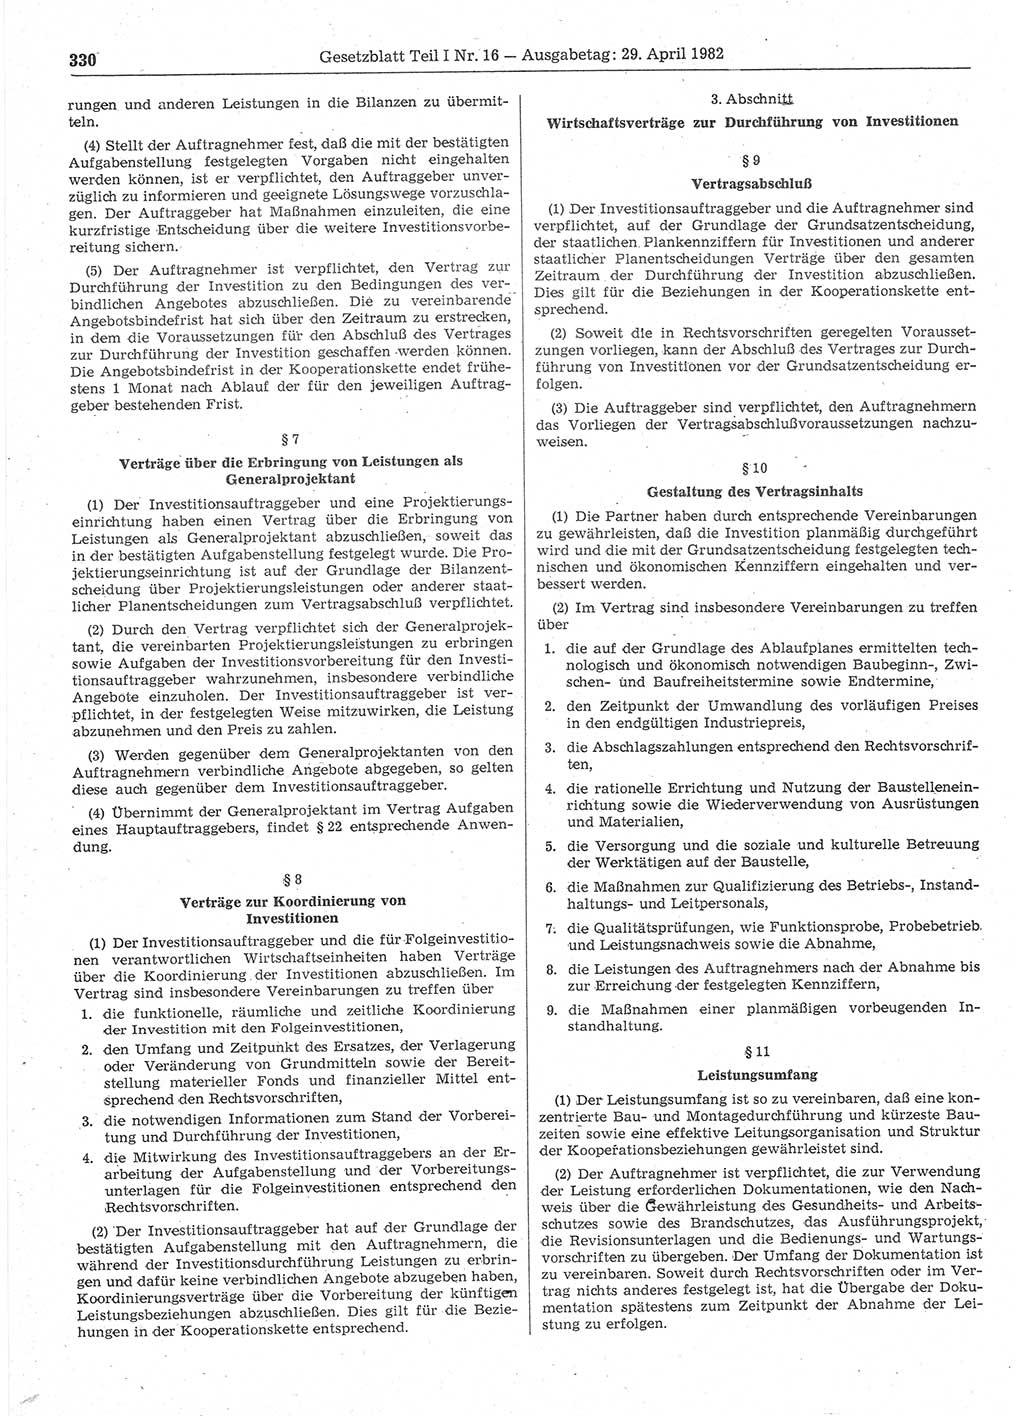 Gesetzblatt (GBl.) der Deutschen Demokratischen Republik (DDR) Teil Ⅰ 1982, Seite 330 (GBl. DDR Ⅰ 1982, S. 330)